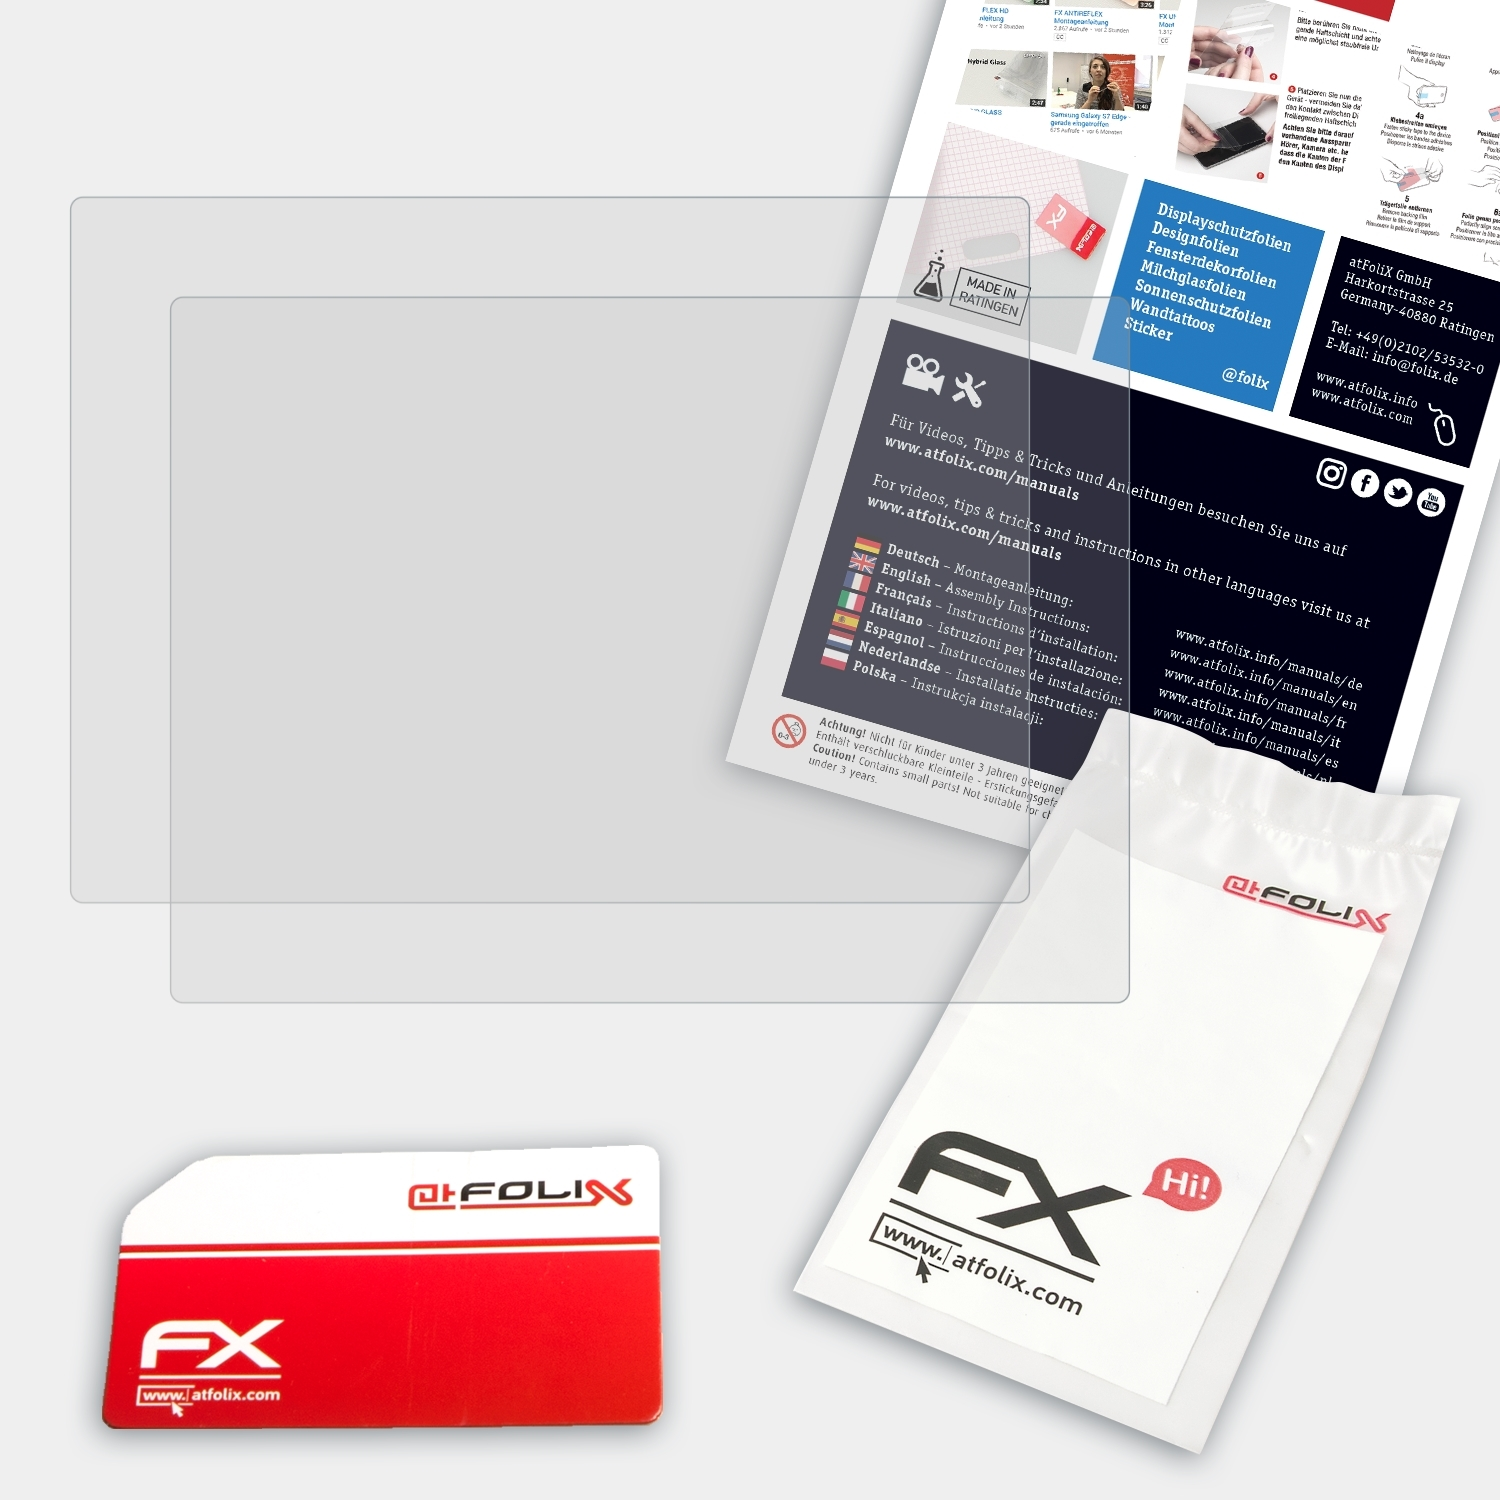 ePad-ink) Displayschutz(für FX-Antireflex 2x ATFOLIX ePadLink